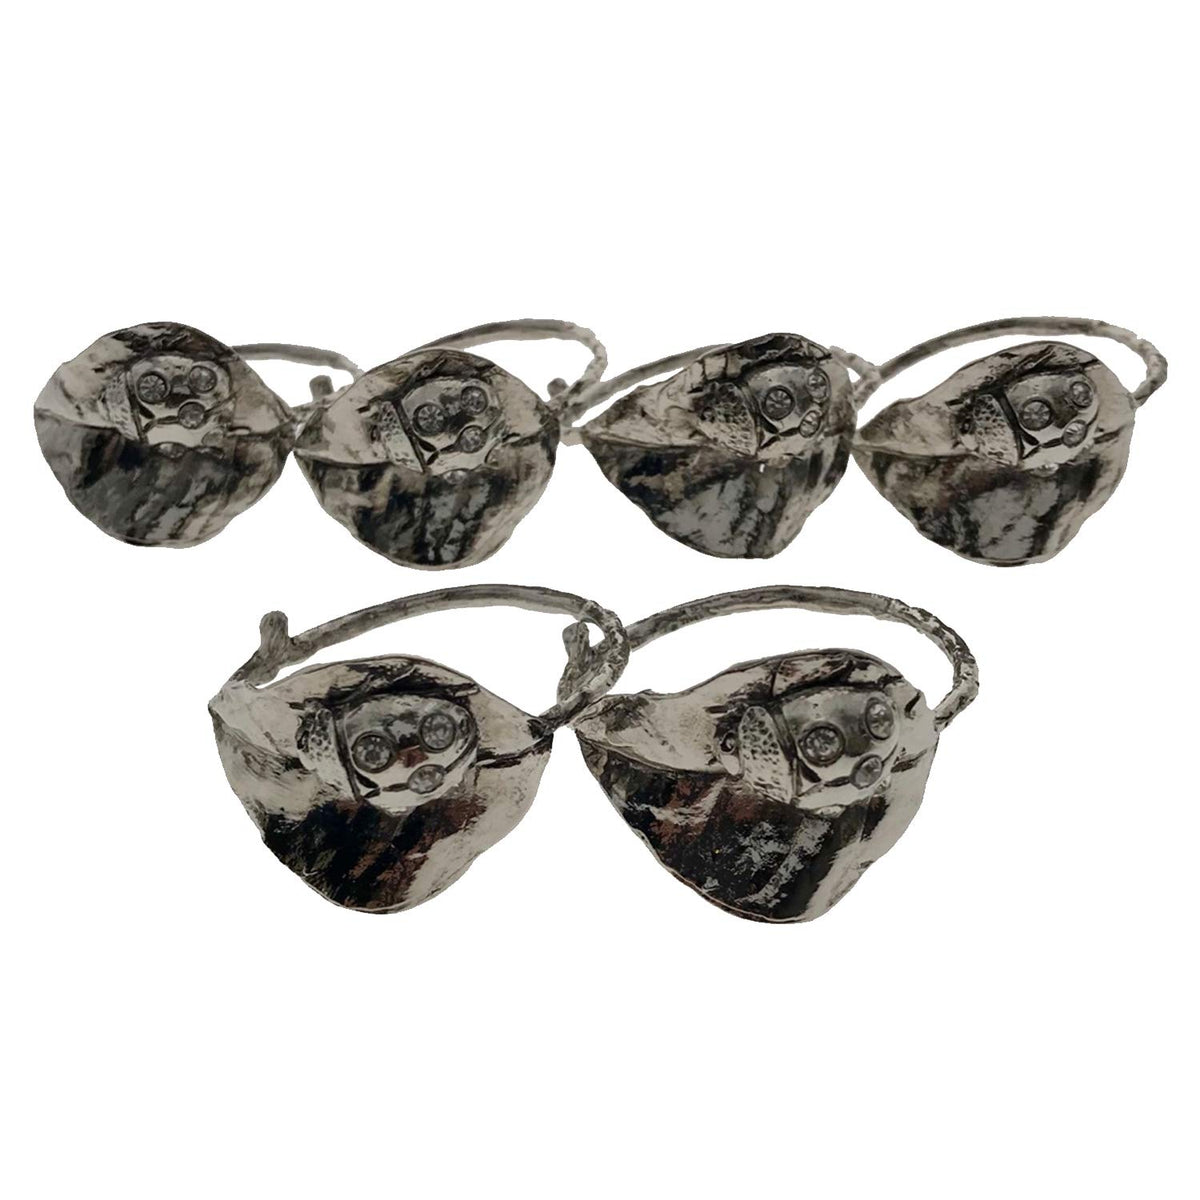 Napkin Rings in Silver Nickel Finish Ladybug Design - Set of 6 - Decozen